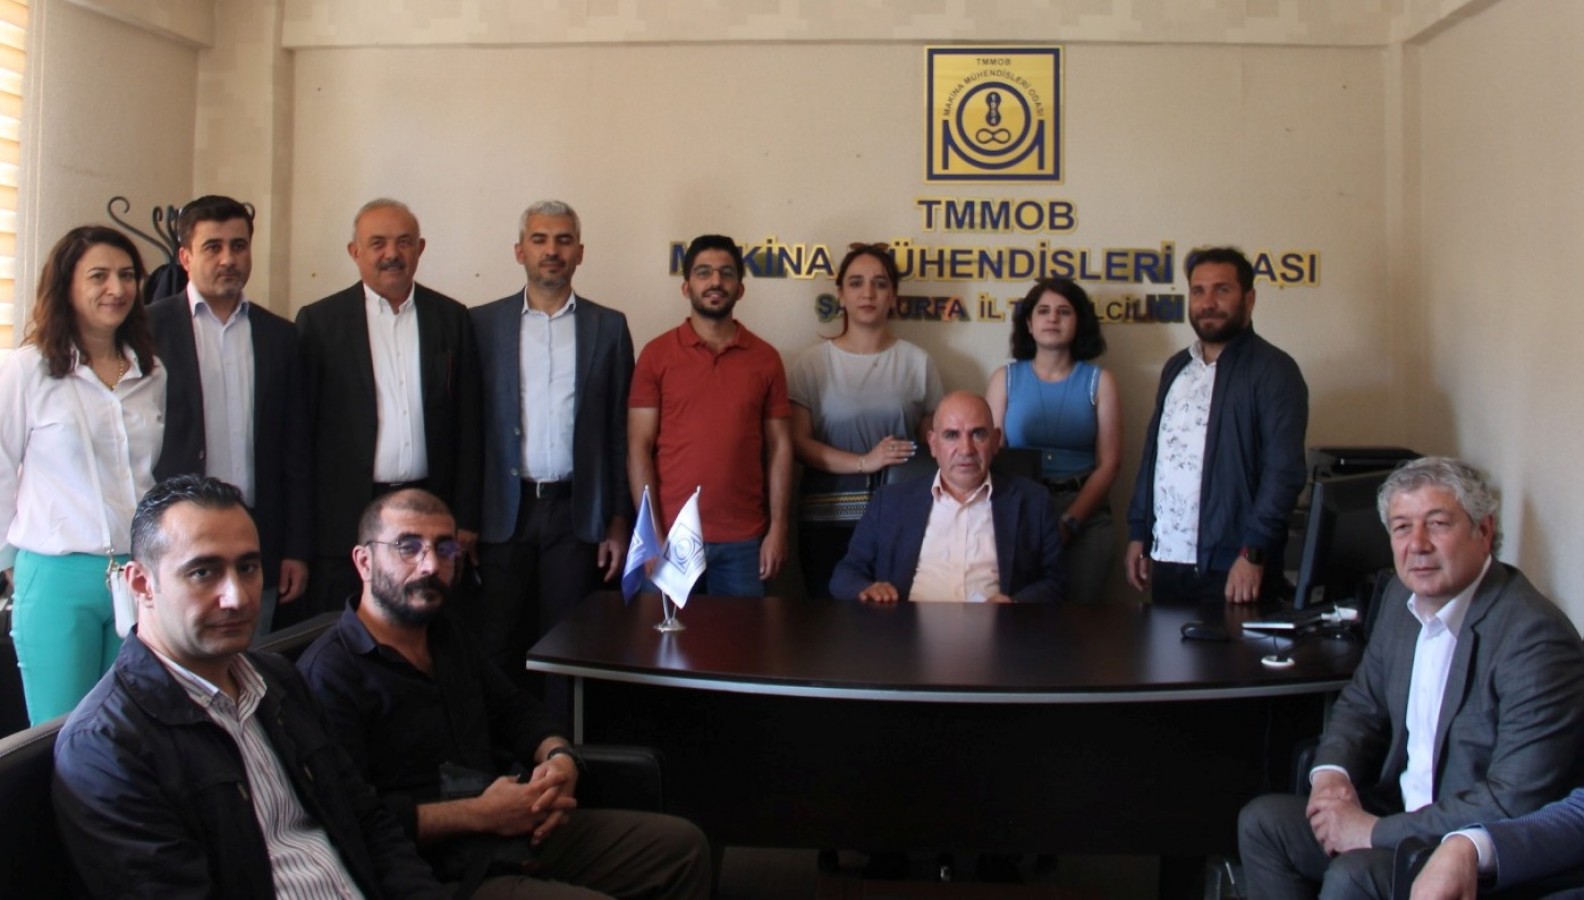 TMMOB Şanlıurfa İl Koordinasyon Kurulu'ndan Gezi Davası açıklaması;